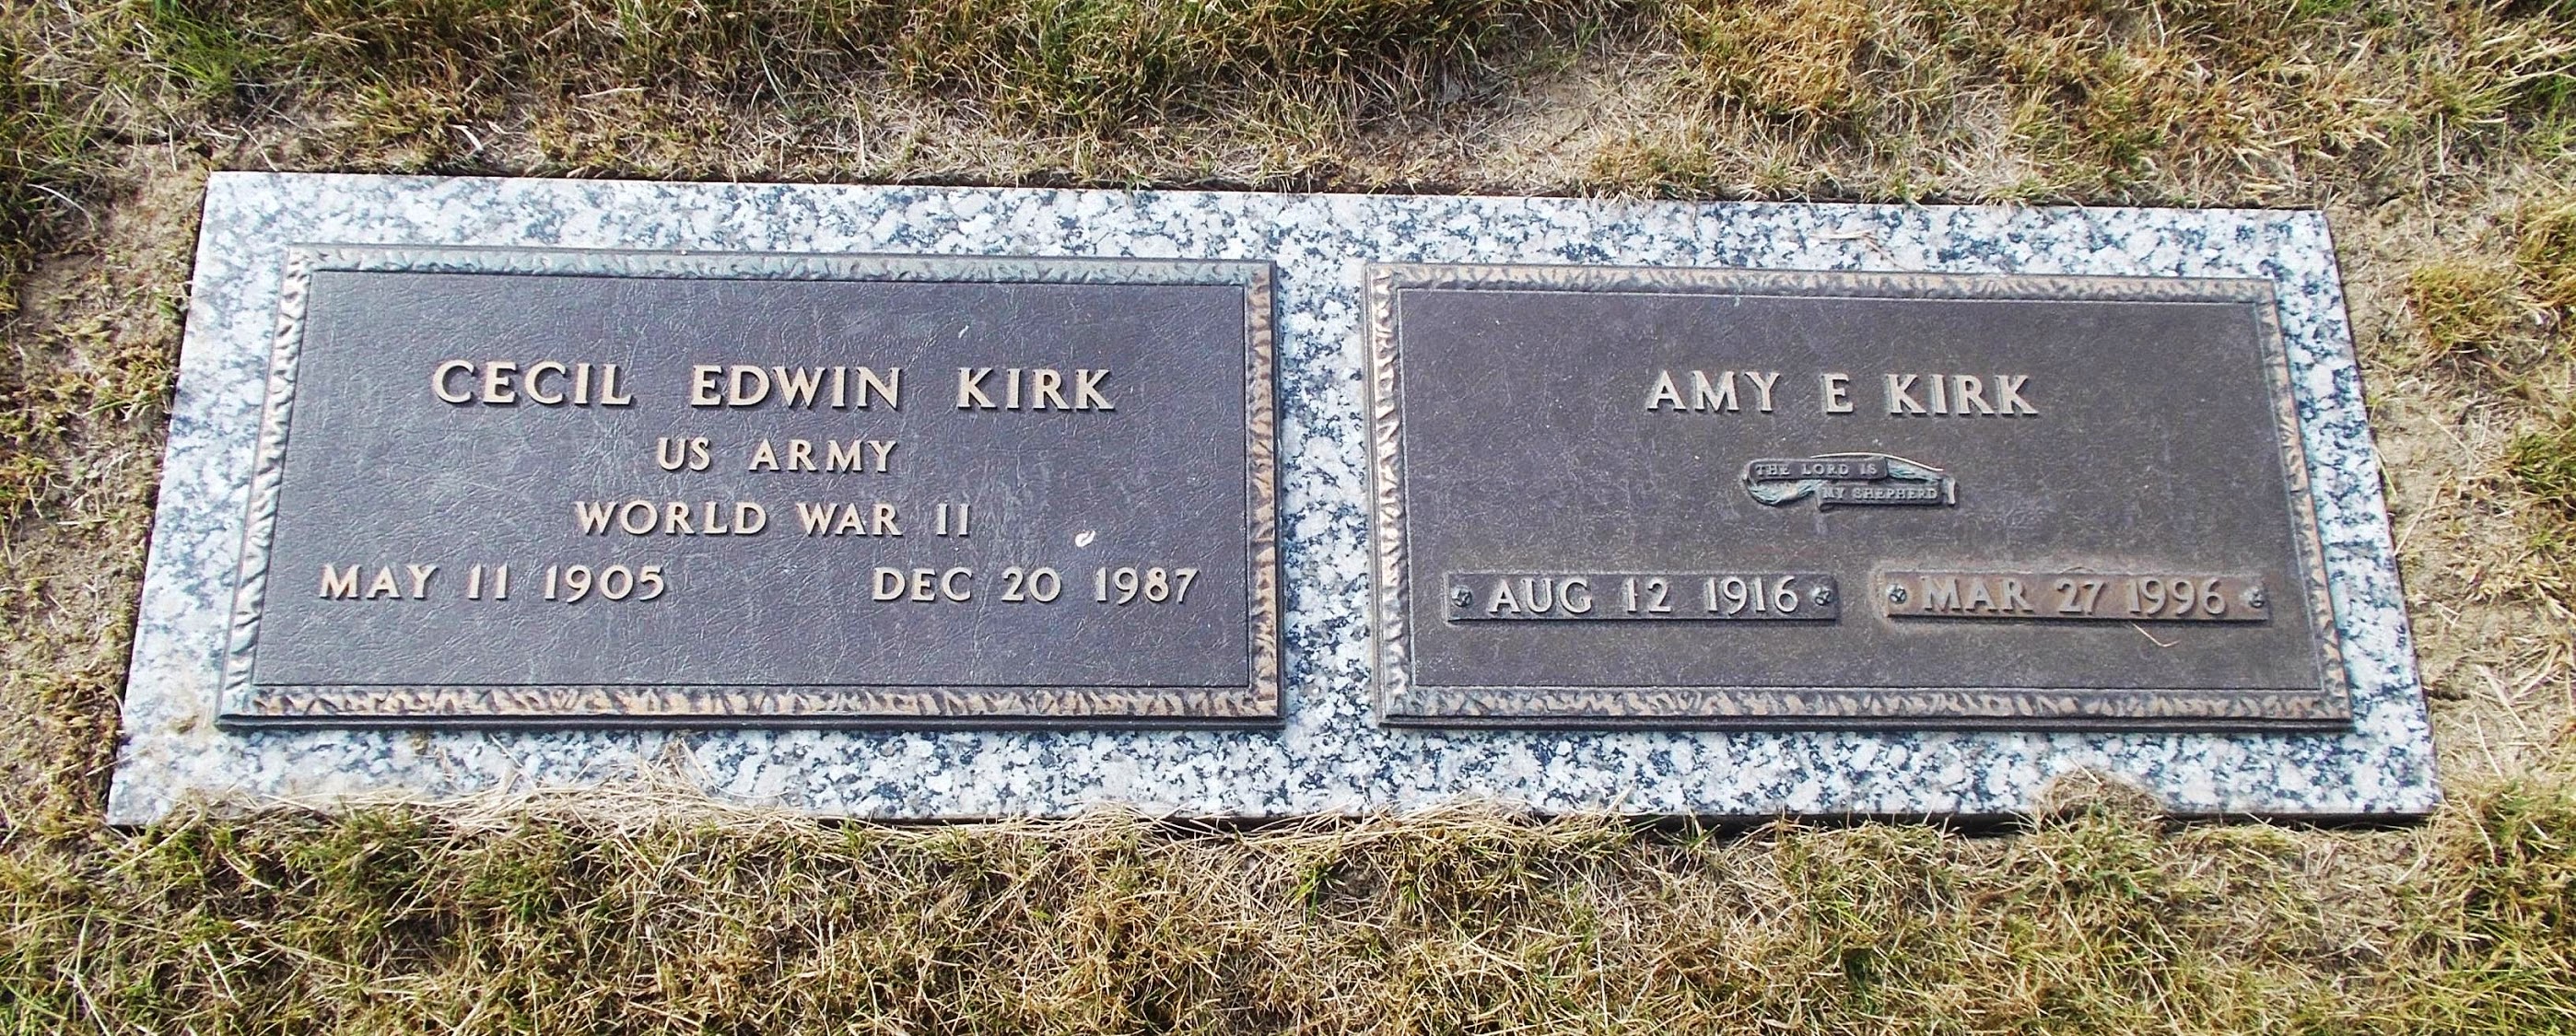 Amy E Kirk